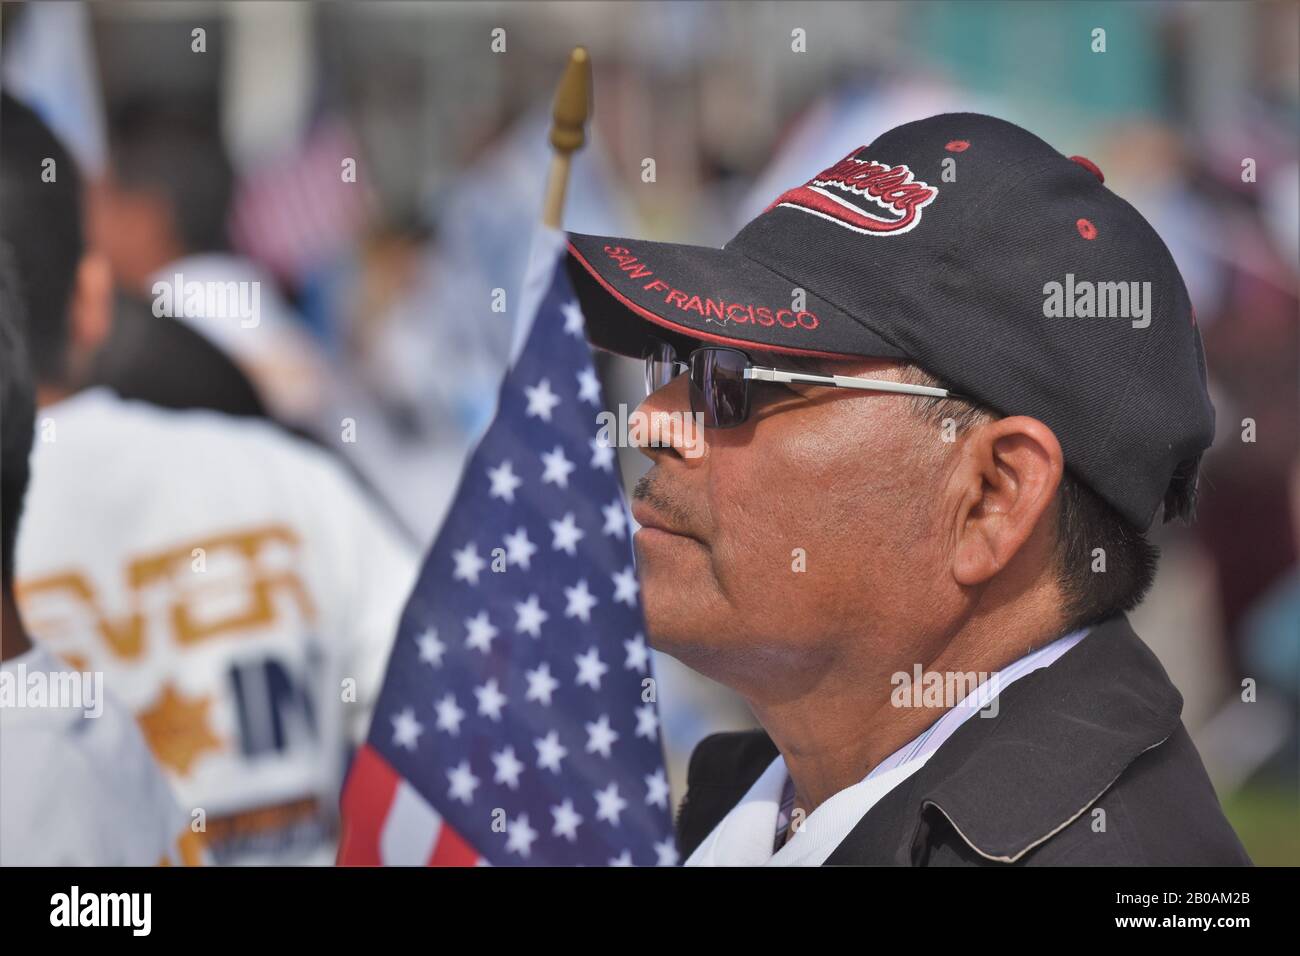 Hispano mayor con bandera americana y gorra de béisbol San Francisco Hat en el rally Foto de stock